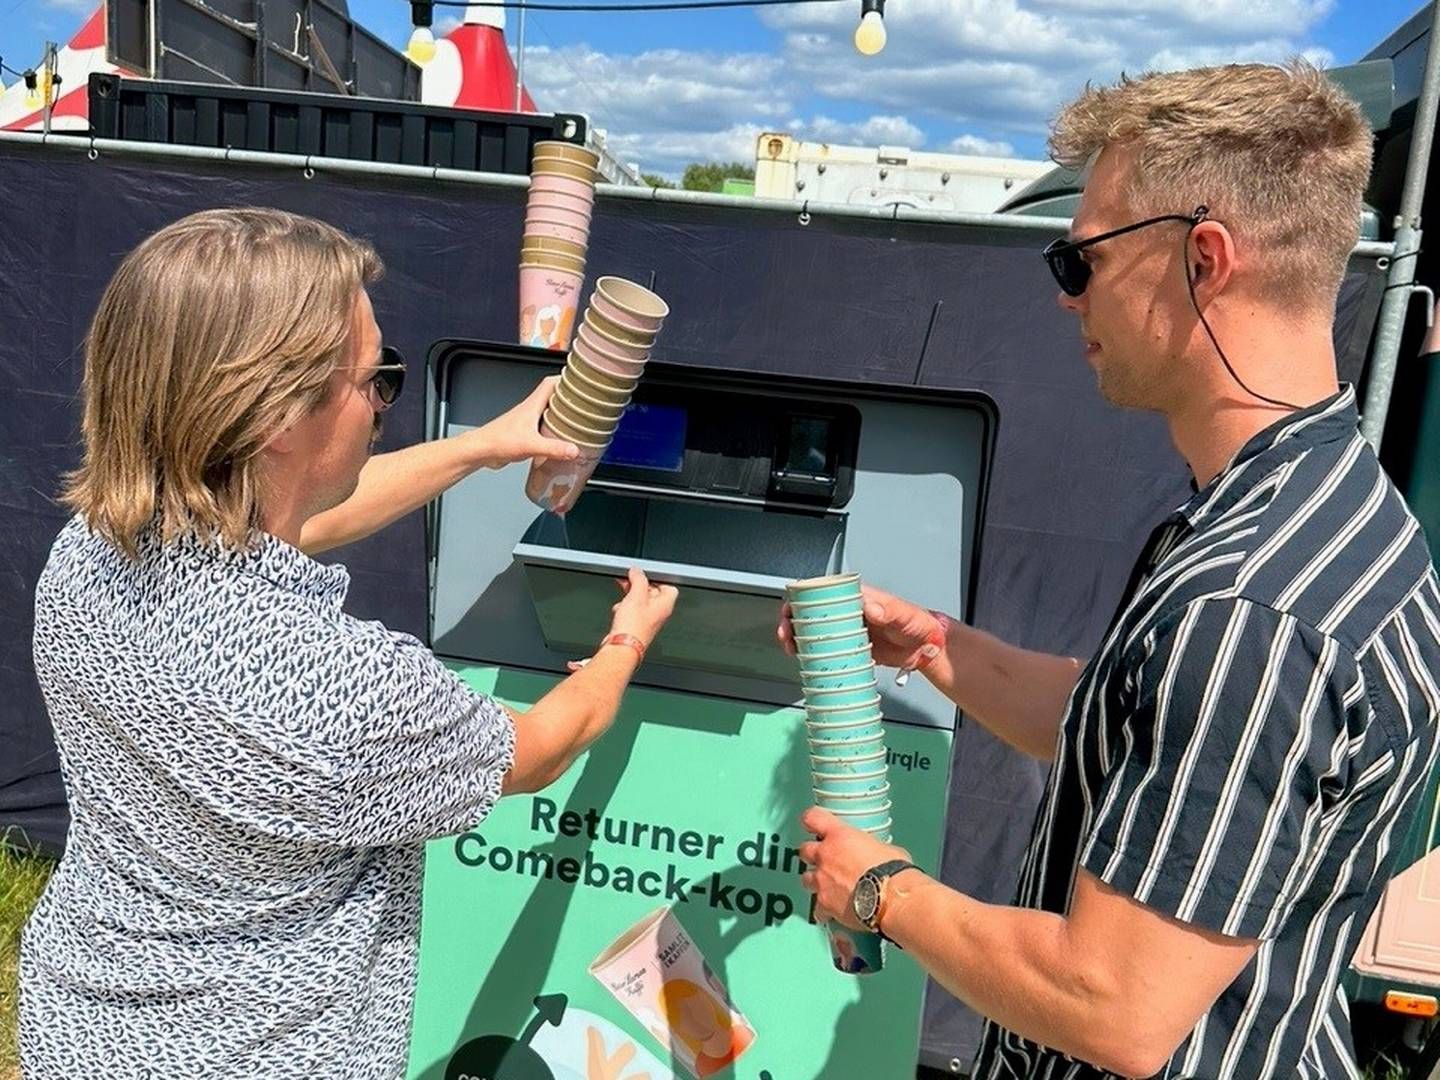 Gæsterne ved Northside Festival kunne i år pante deres kaffekopper i en pantmaskine leveret af Cirqle. | Foto: Cirqle/pr